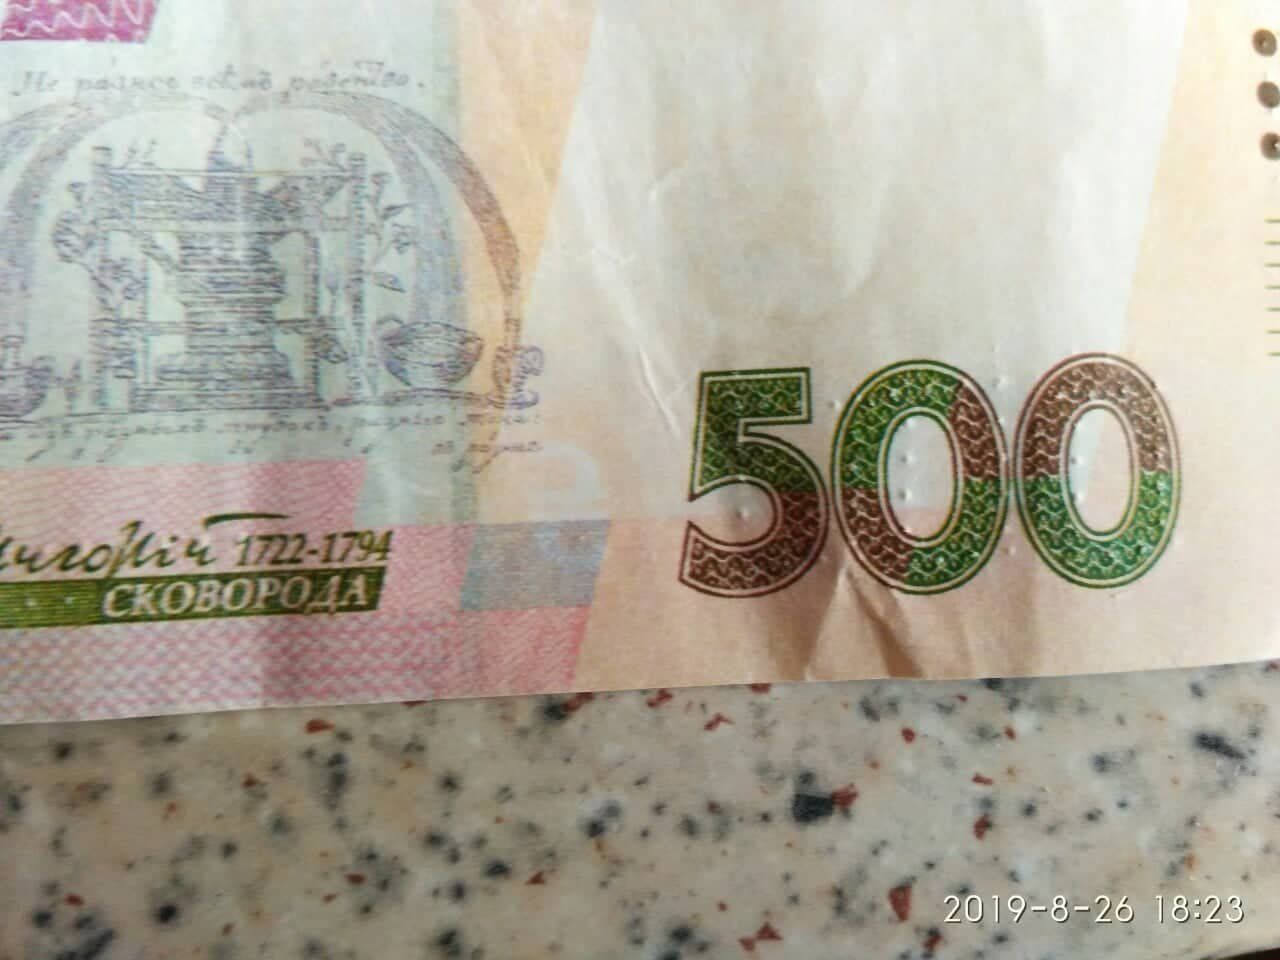 У магазинах Закарпаття розраховуються фальшивими 500-гривневими банкнотами